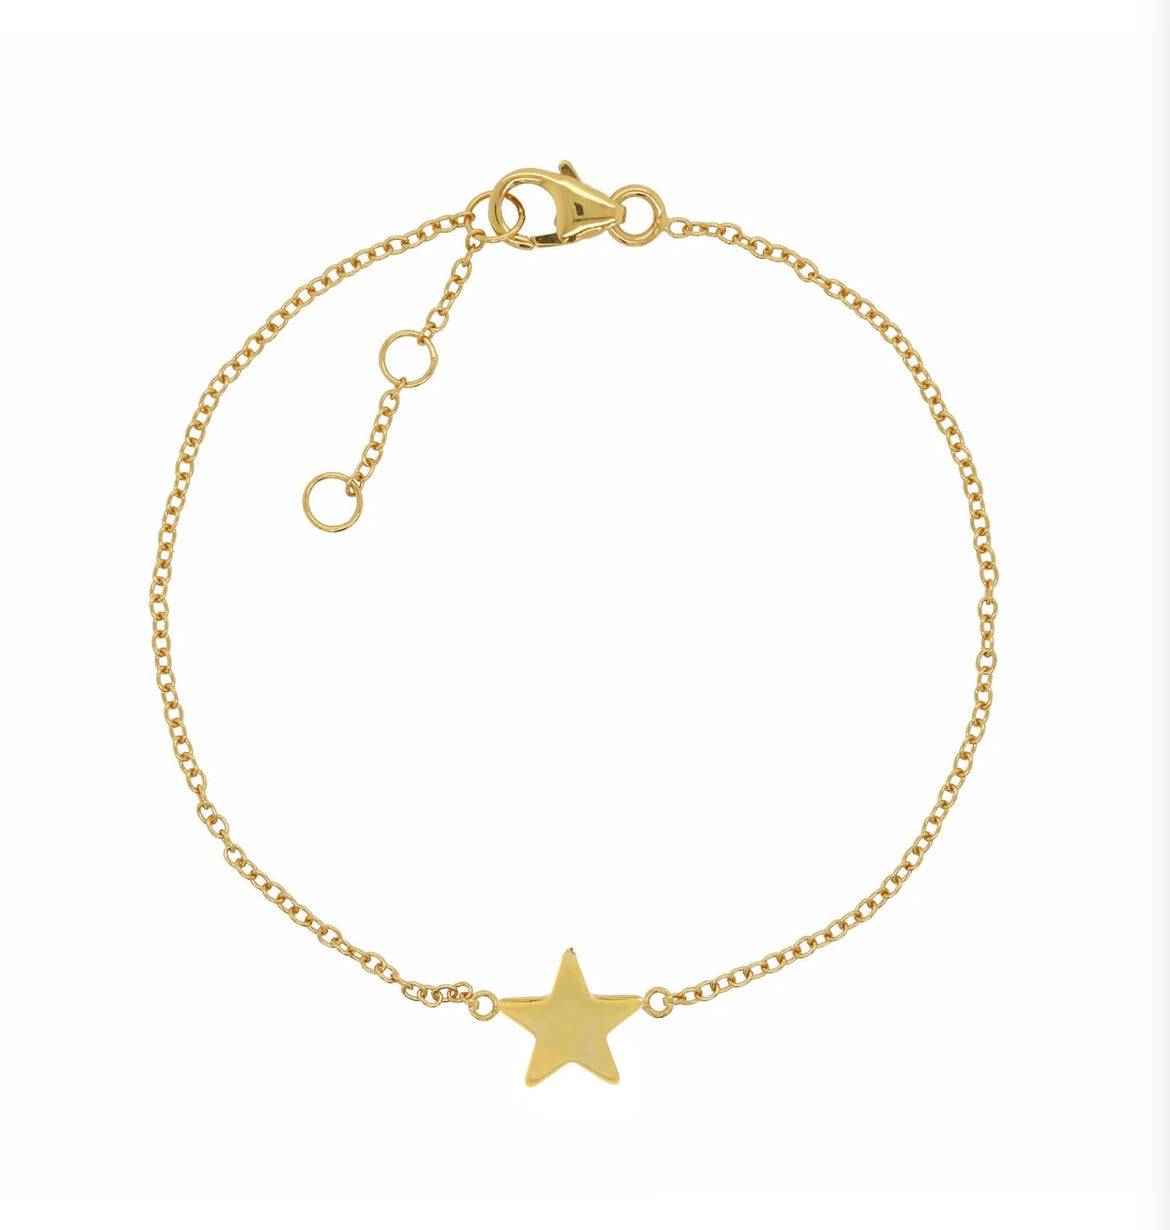 Dainty star bracelet